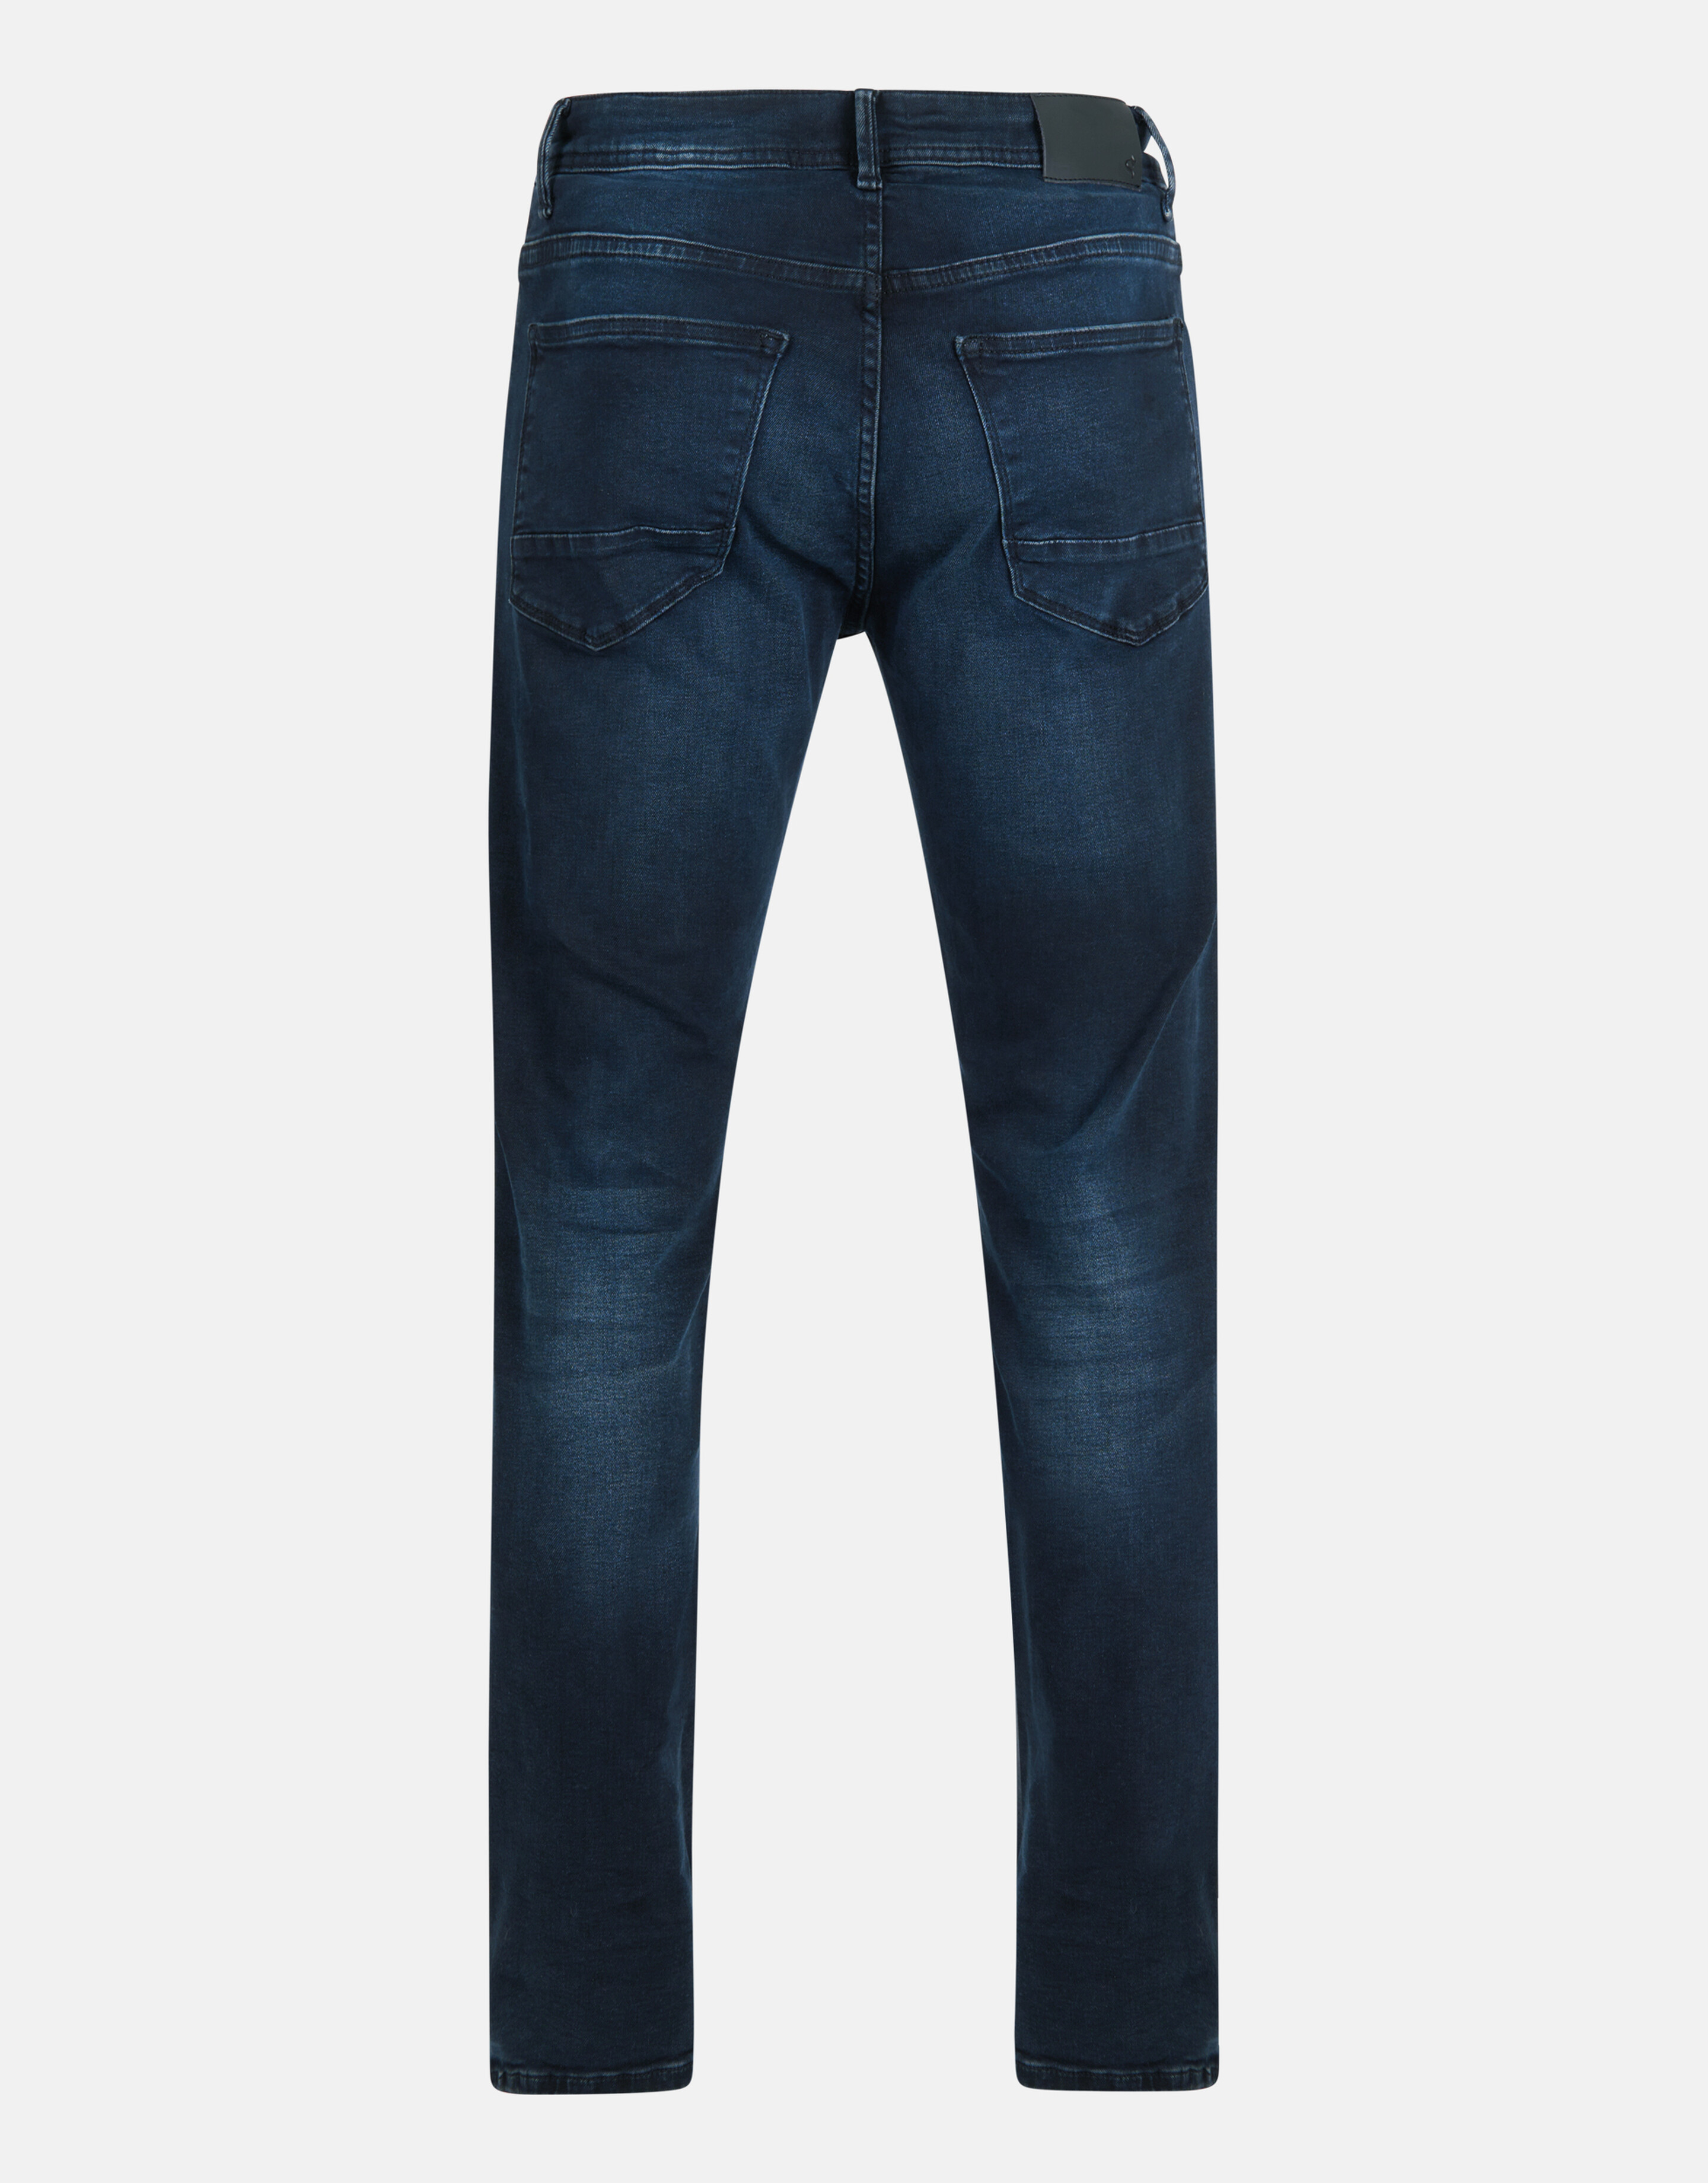 Straight Jeans Blauw/Zwart L36 Refill